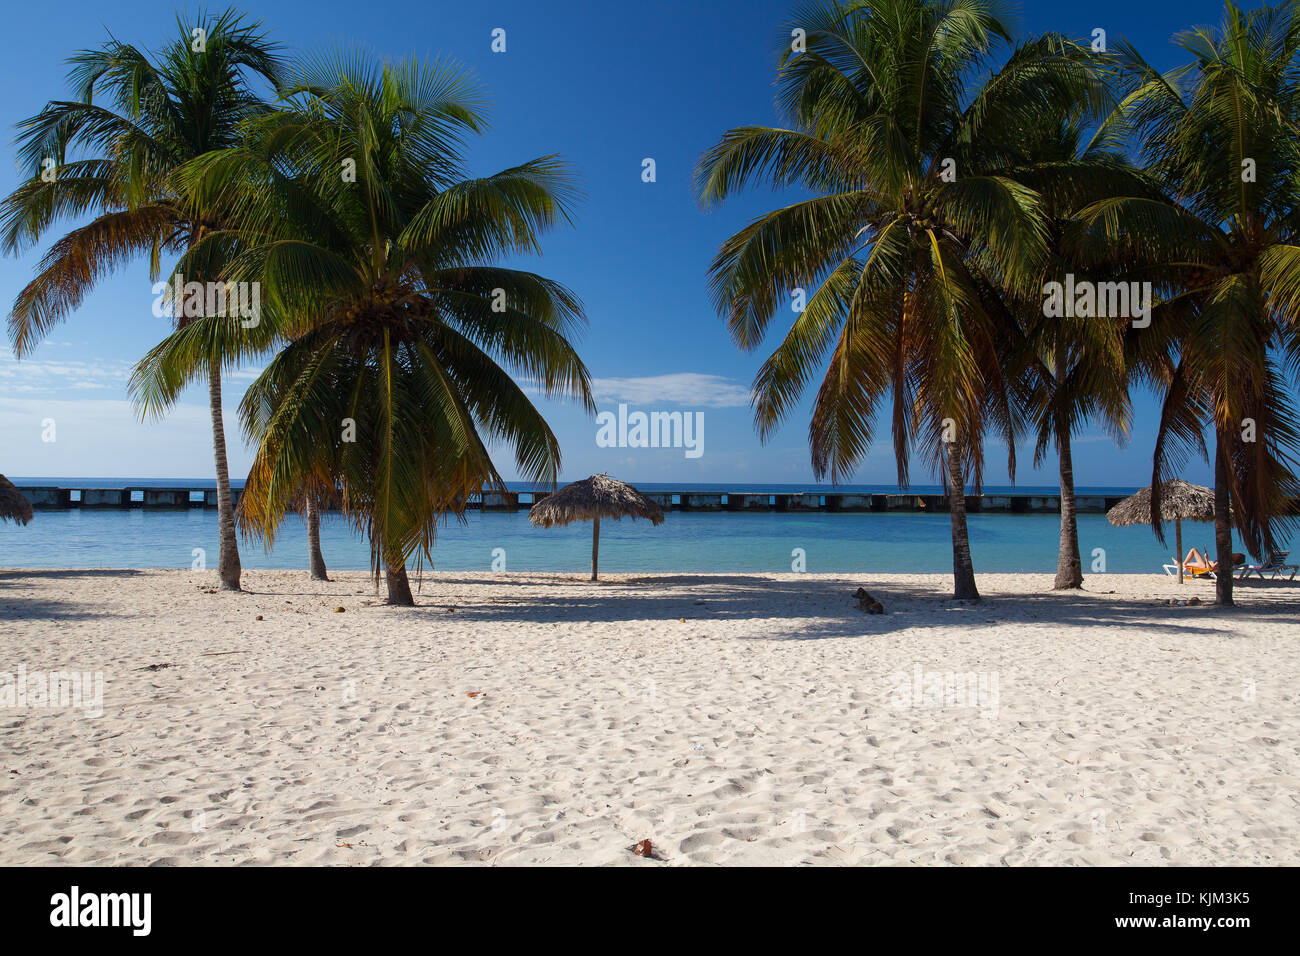 Am Strand Playa Giron, Kuba. Dieser Strand ist berühmt für seine Rolle während der Invasion in der Schweinebucht. Stockfoto